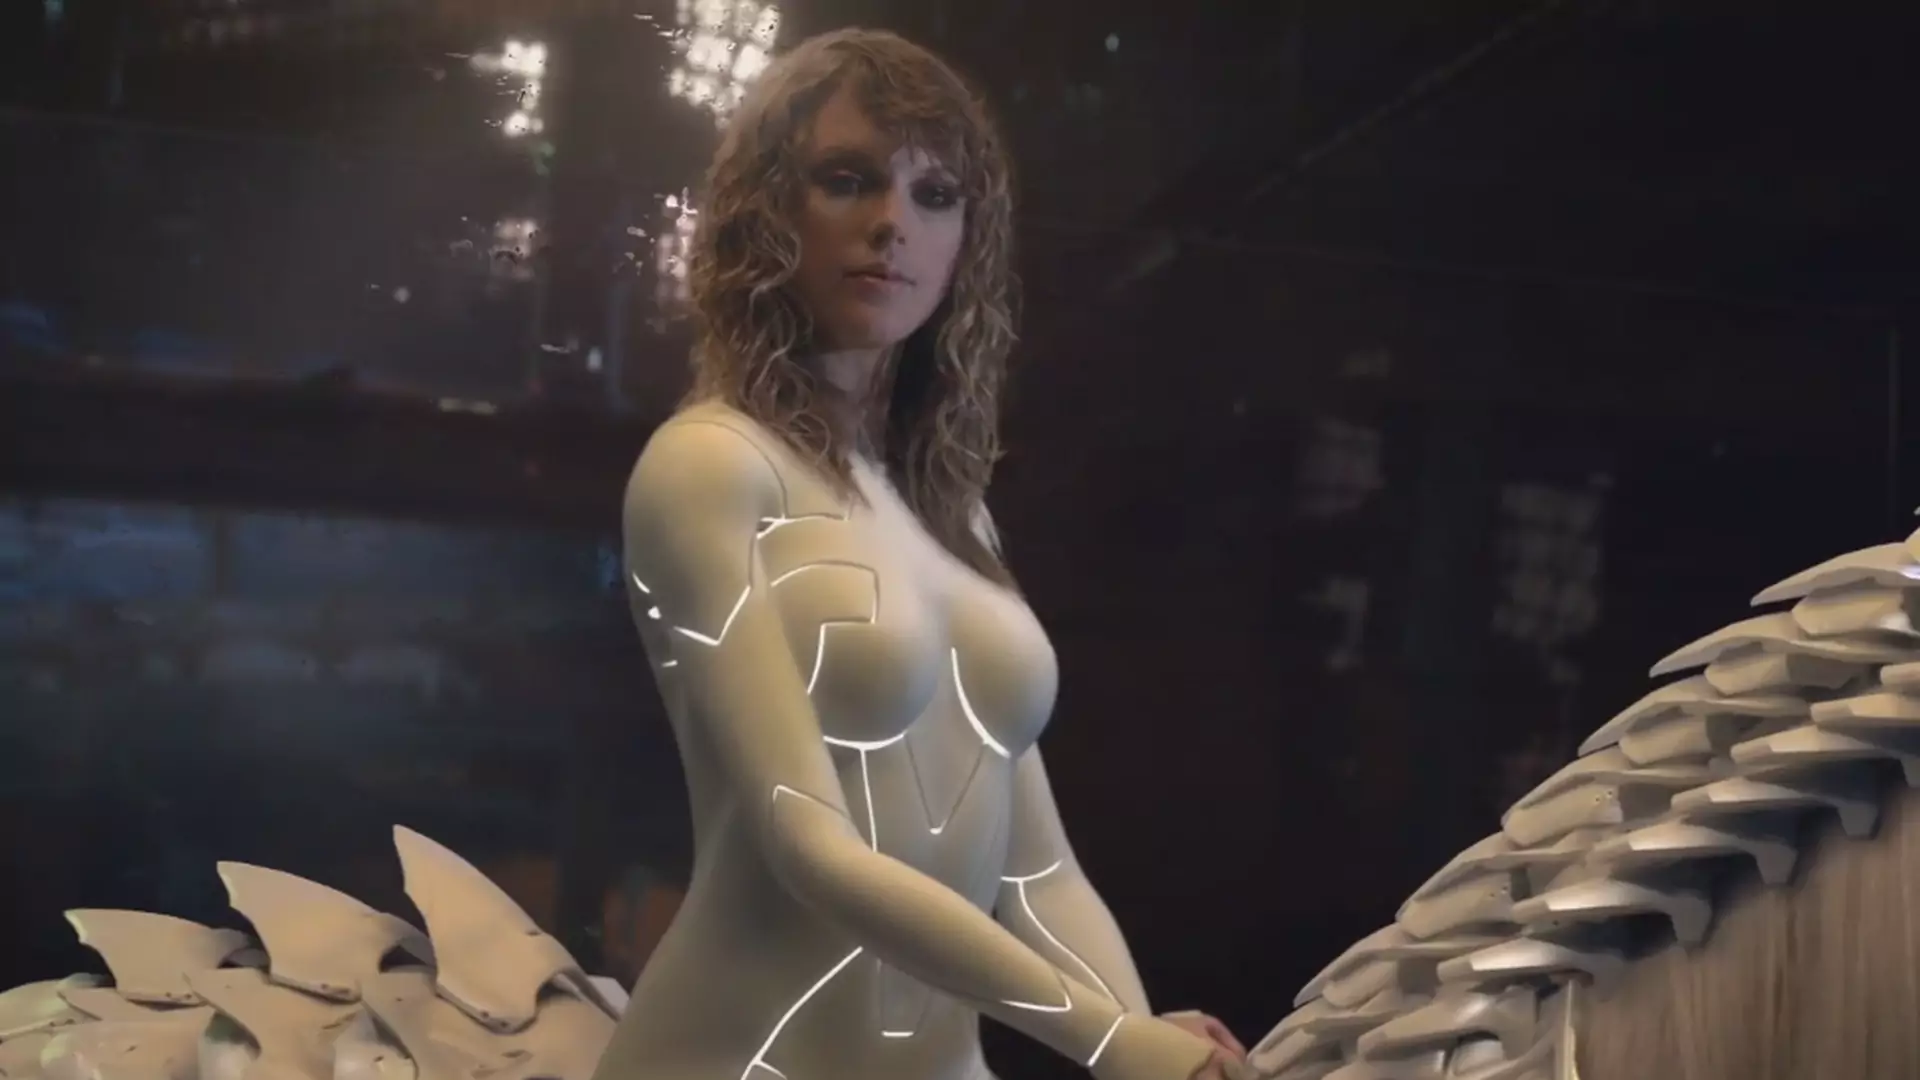 Roboty, pioruny i Taylor Swift na koniu. Teledysk do "...Ready For It?" jak dobry film sci-fi